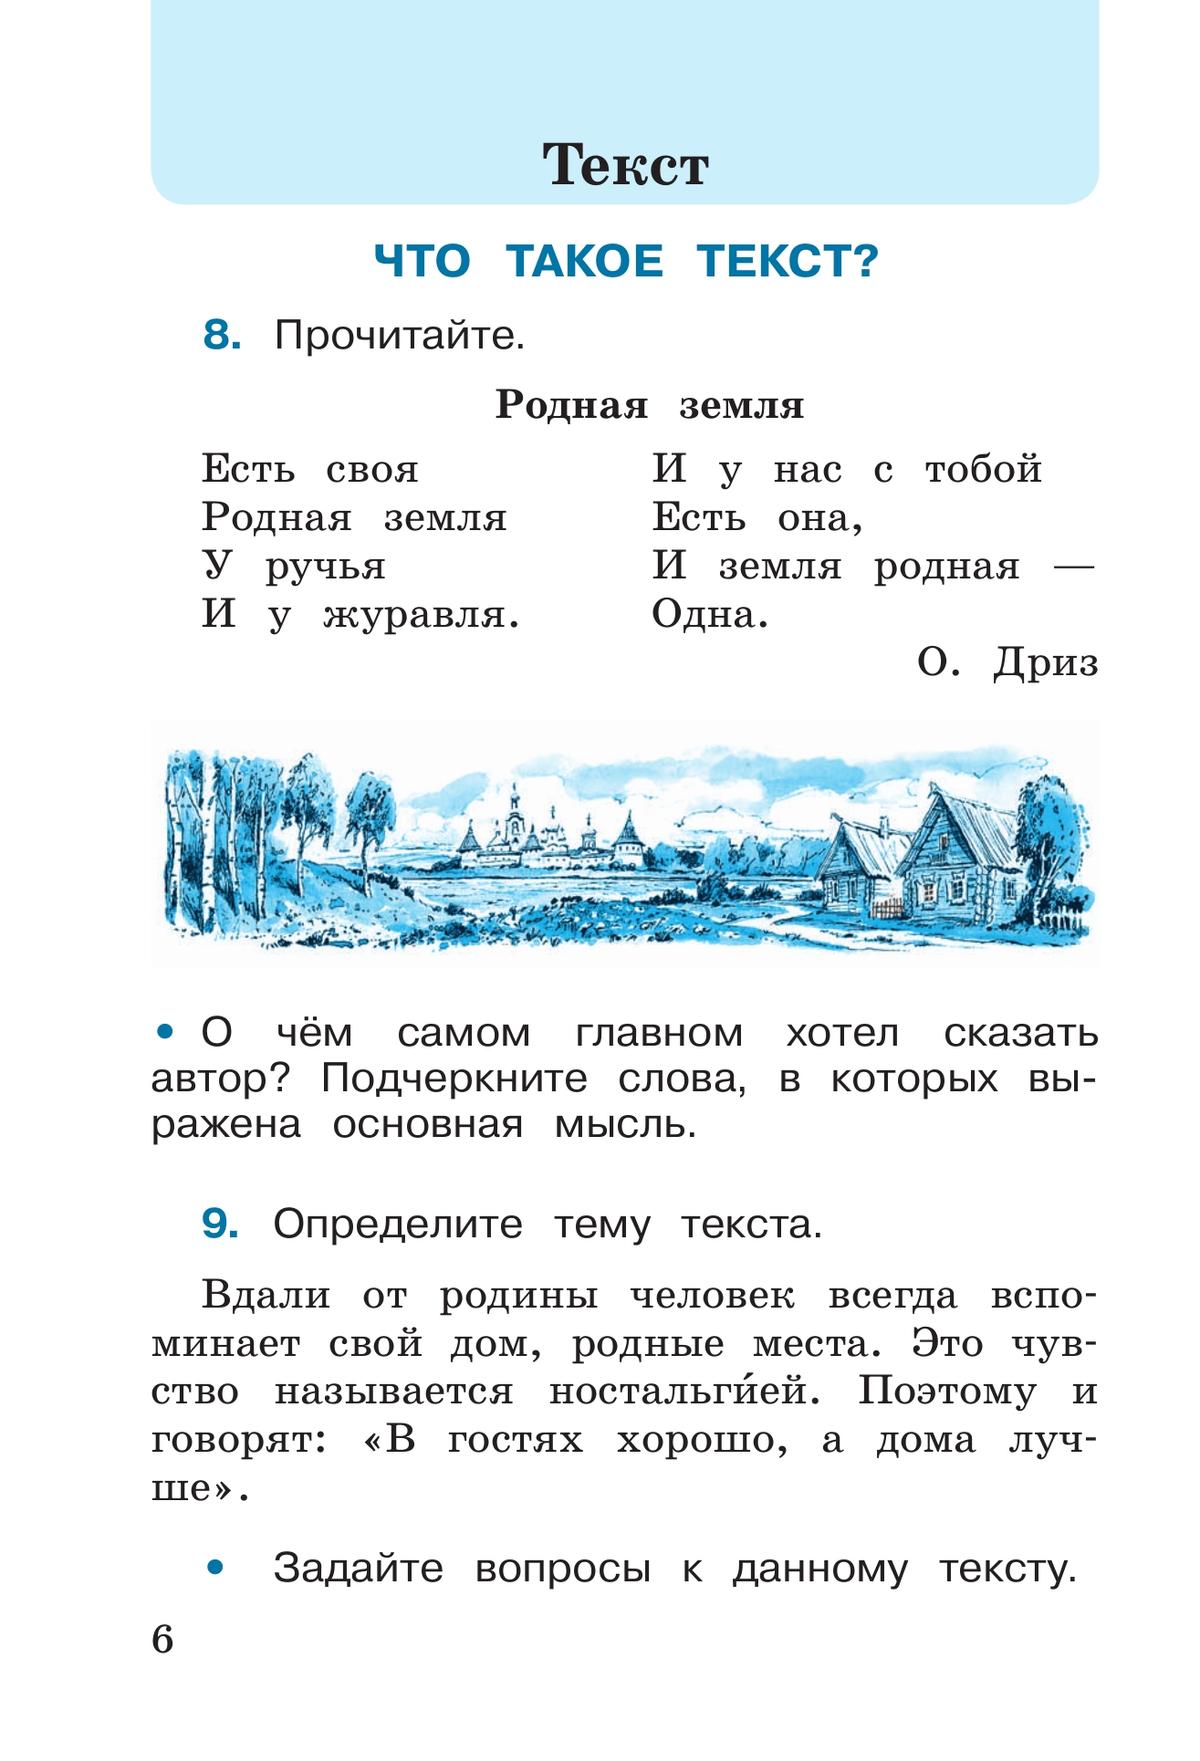 Русский язык. Рабочая тетрадь. 2 класс. В 2-х ч. Ч. 1 7